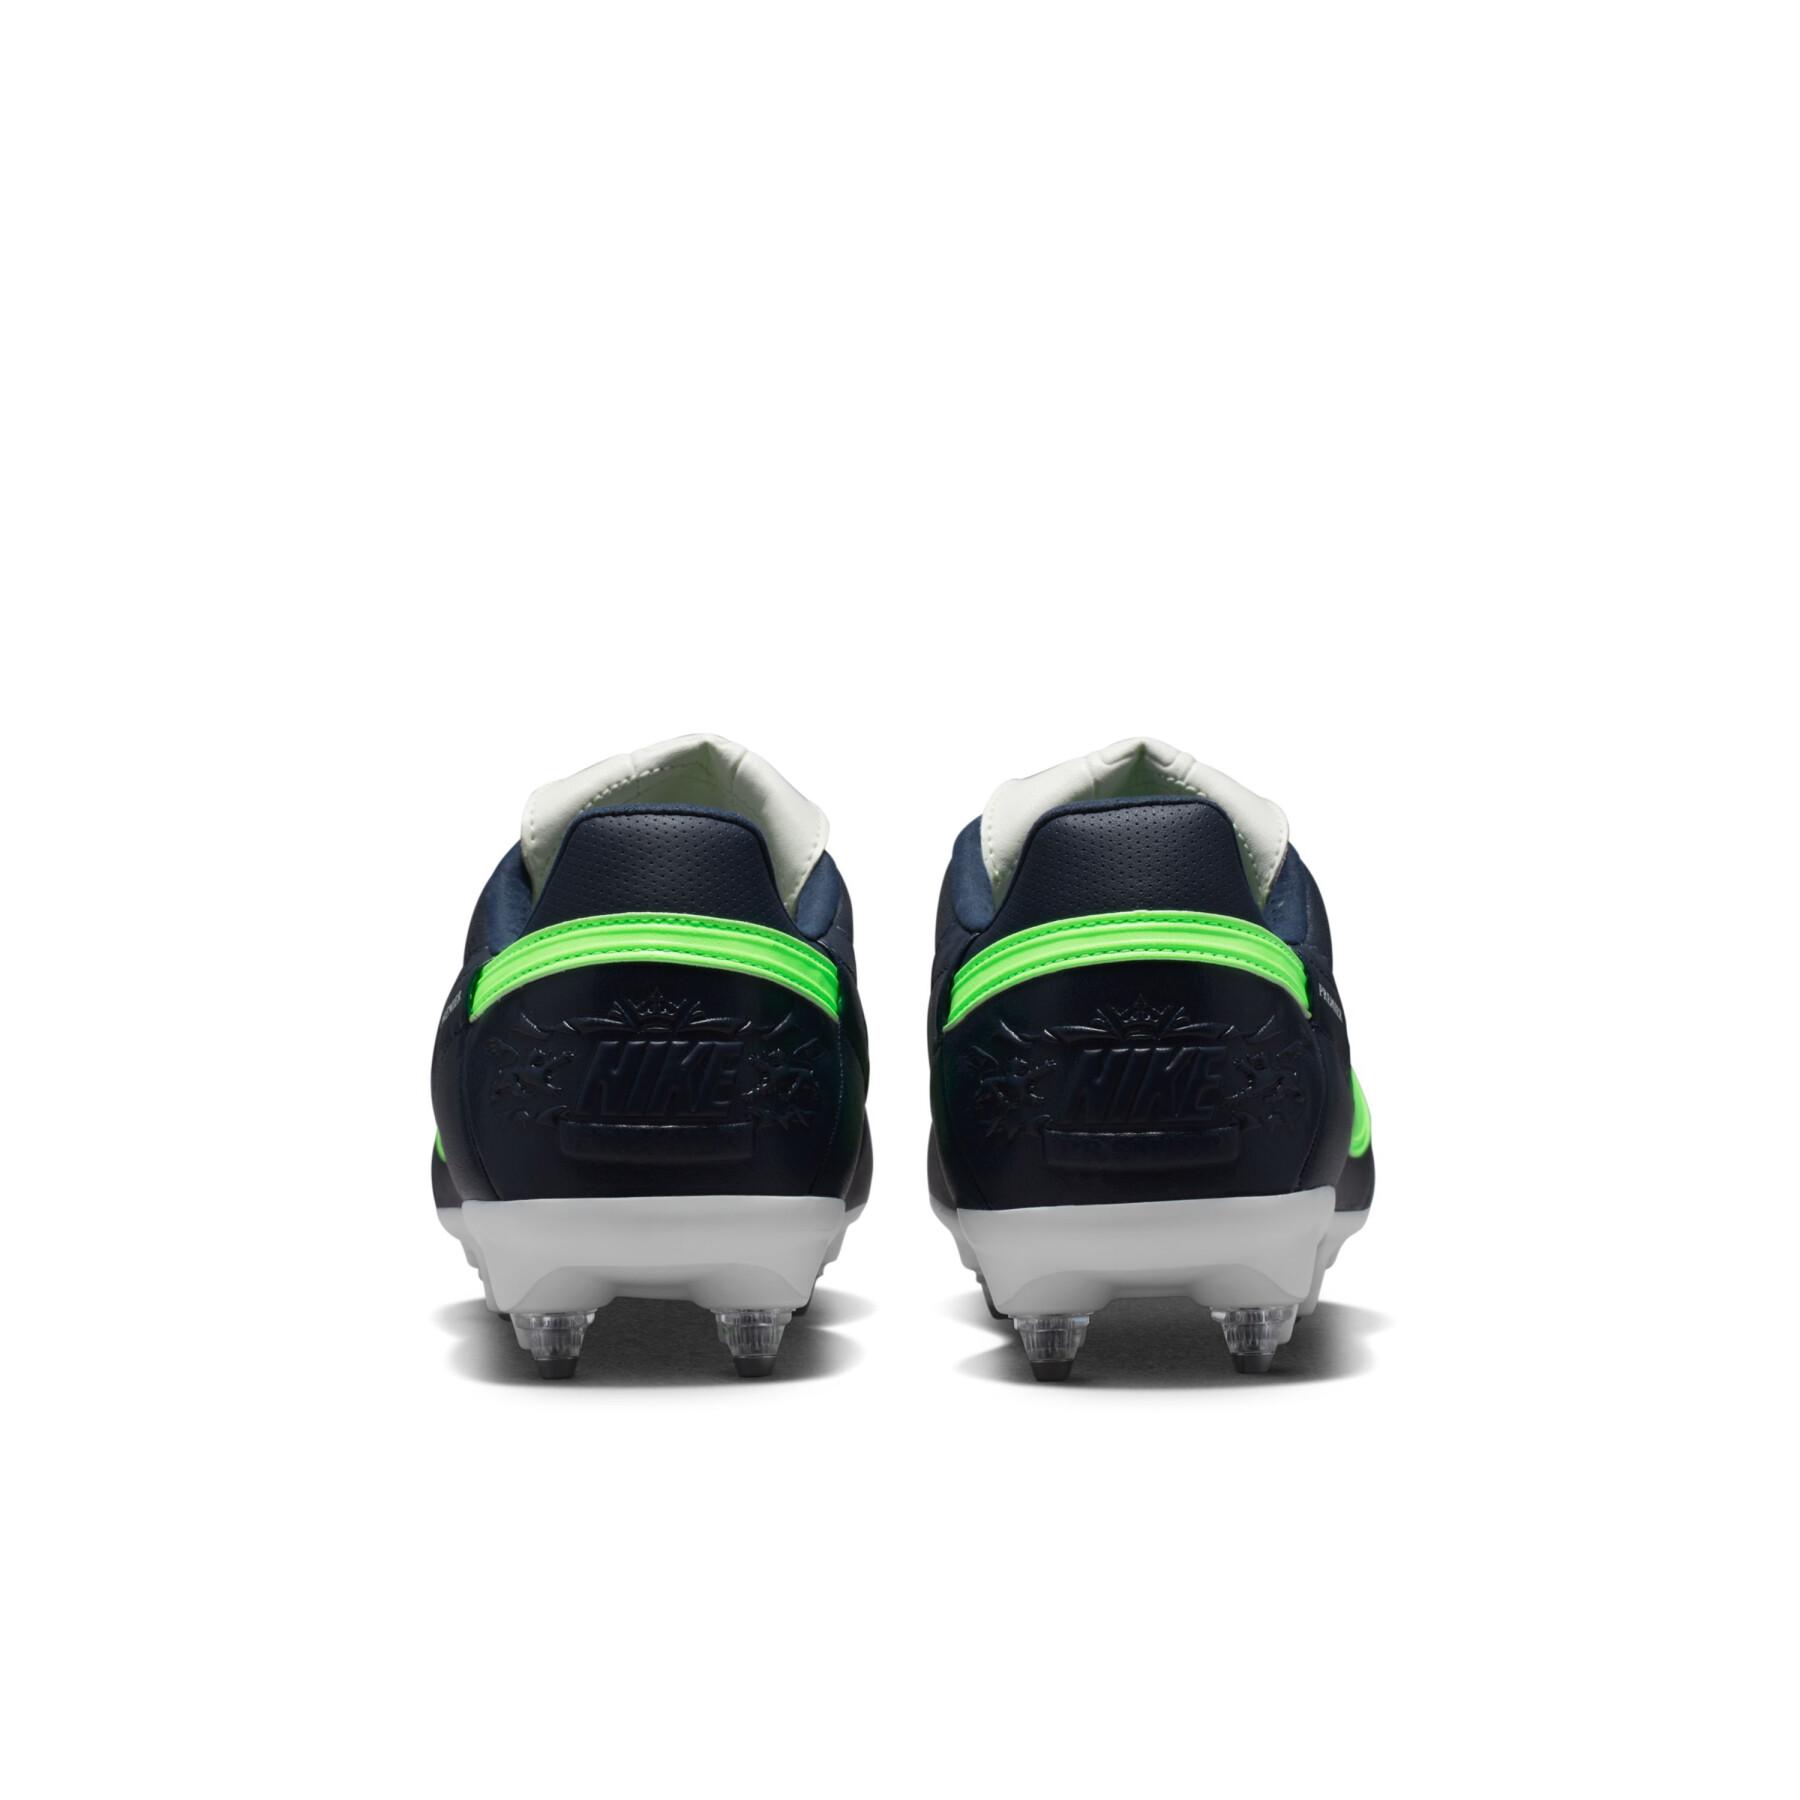 Scarpe da calcio Nike Premier 3 SG-Pro